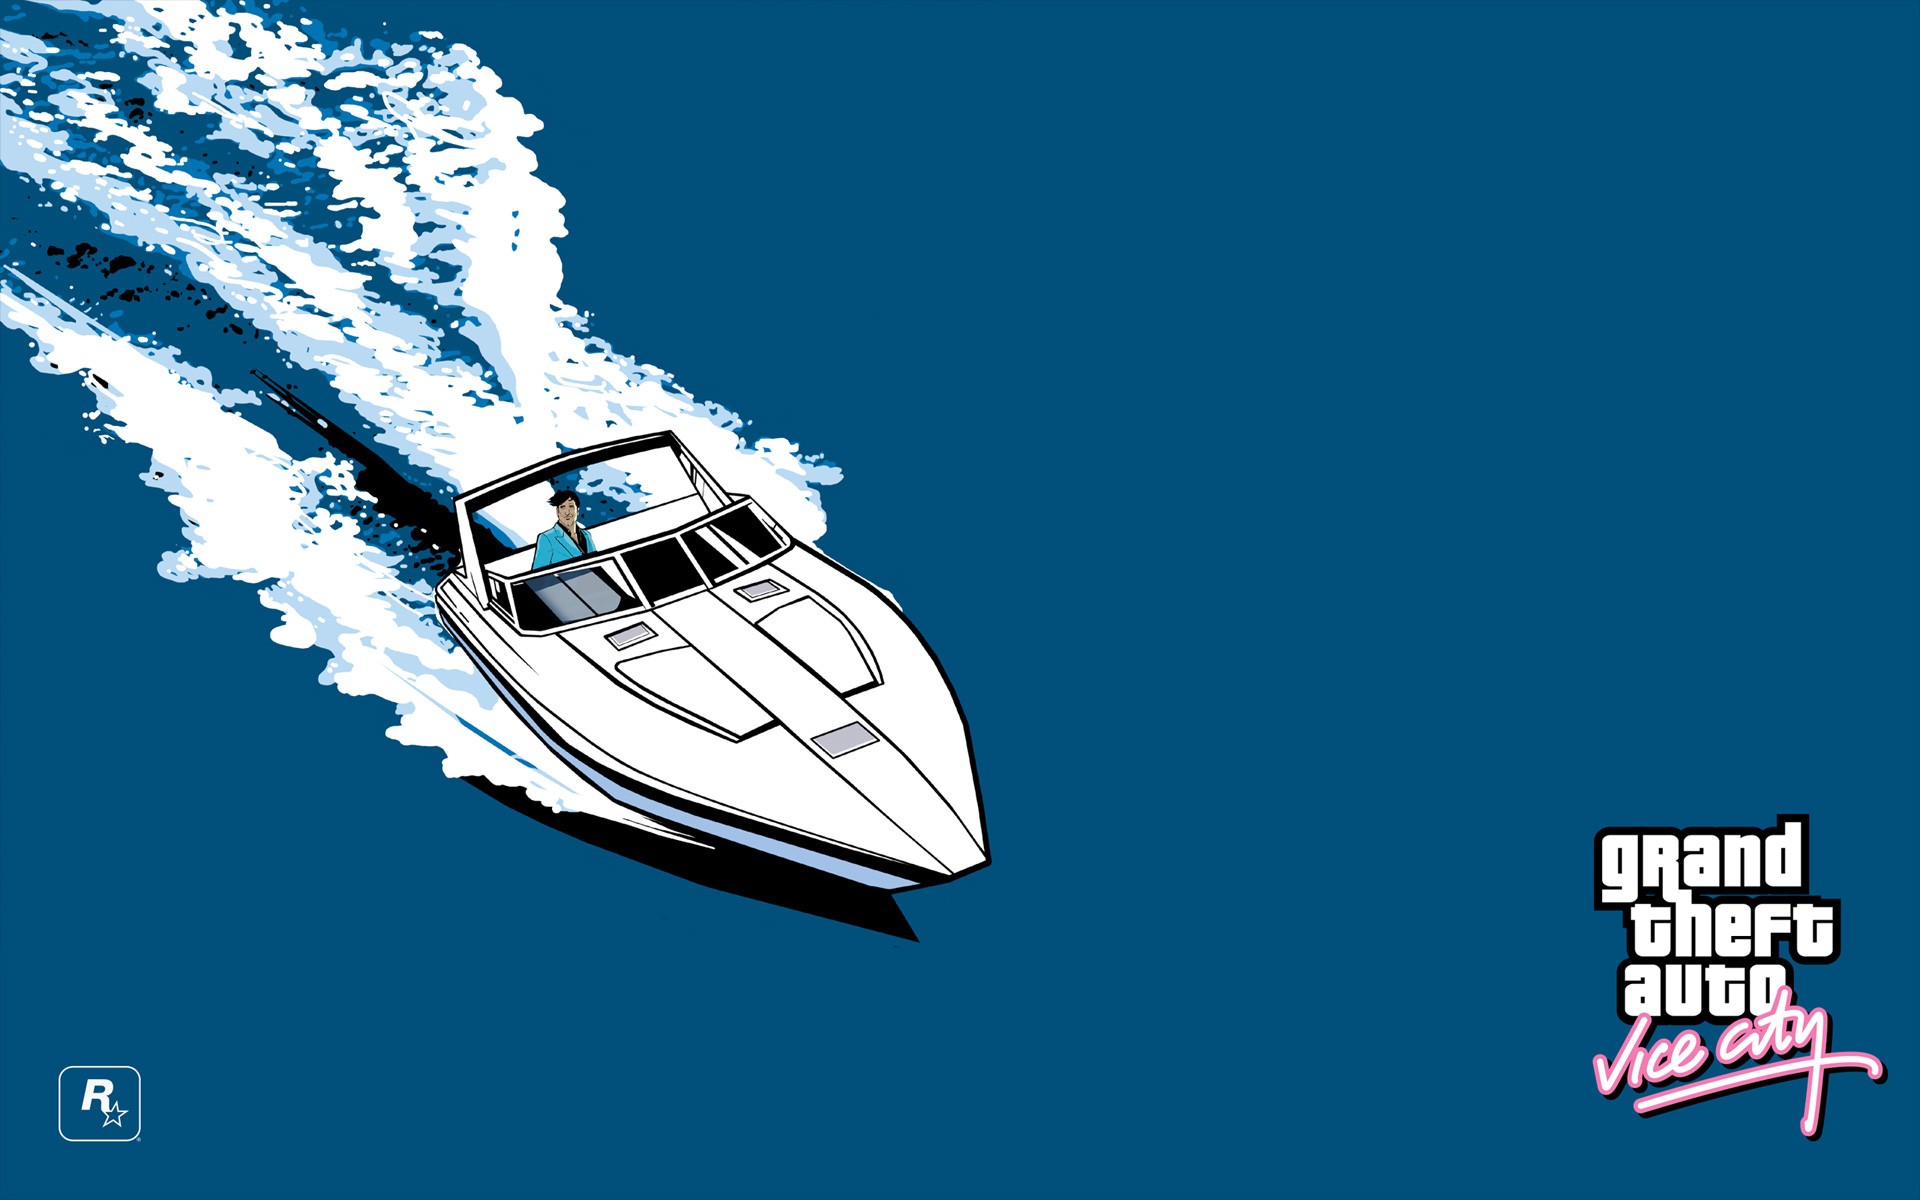 Grand Theft Auto Vice City Boat Sea Rockstar Games Logo Grand Theft Auto 1920x1200